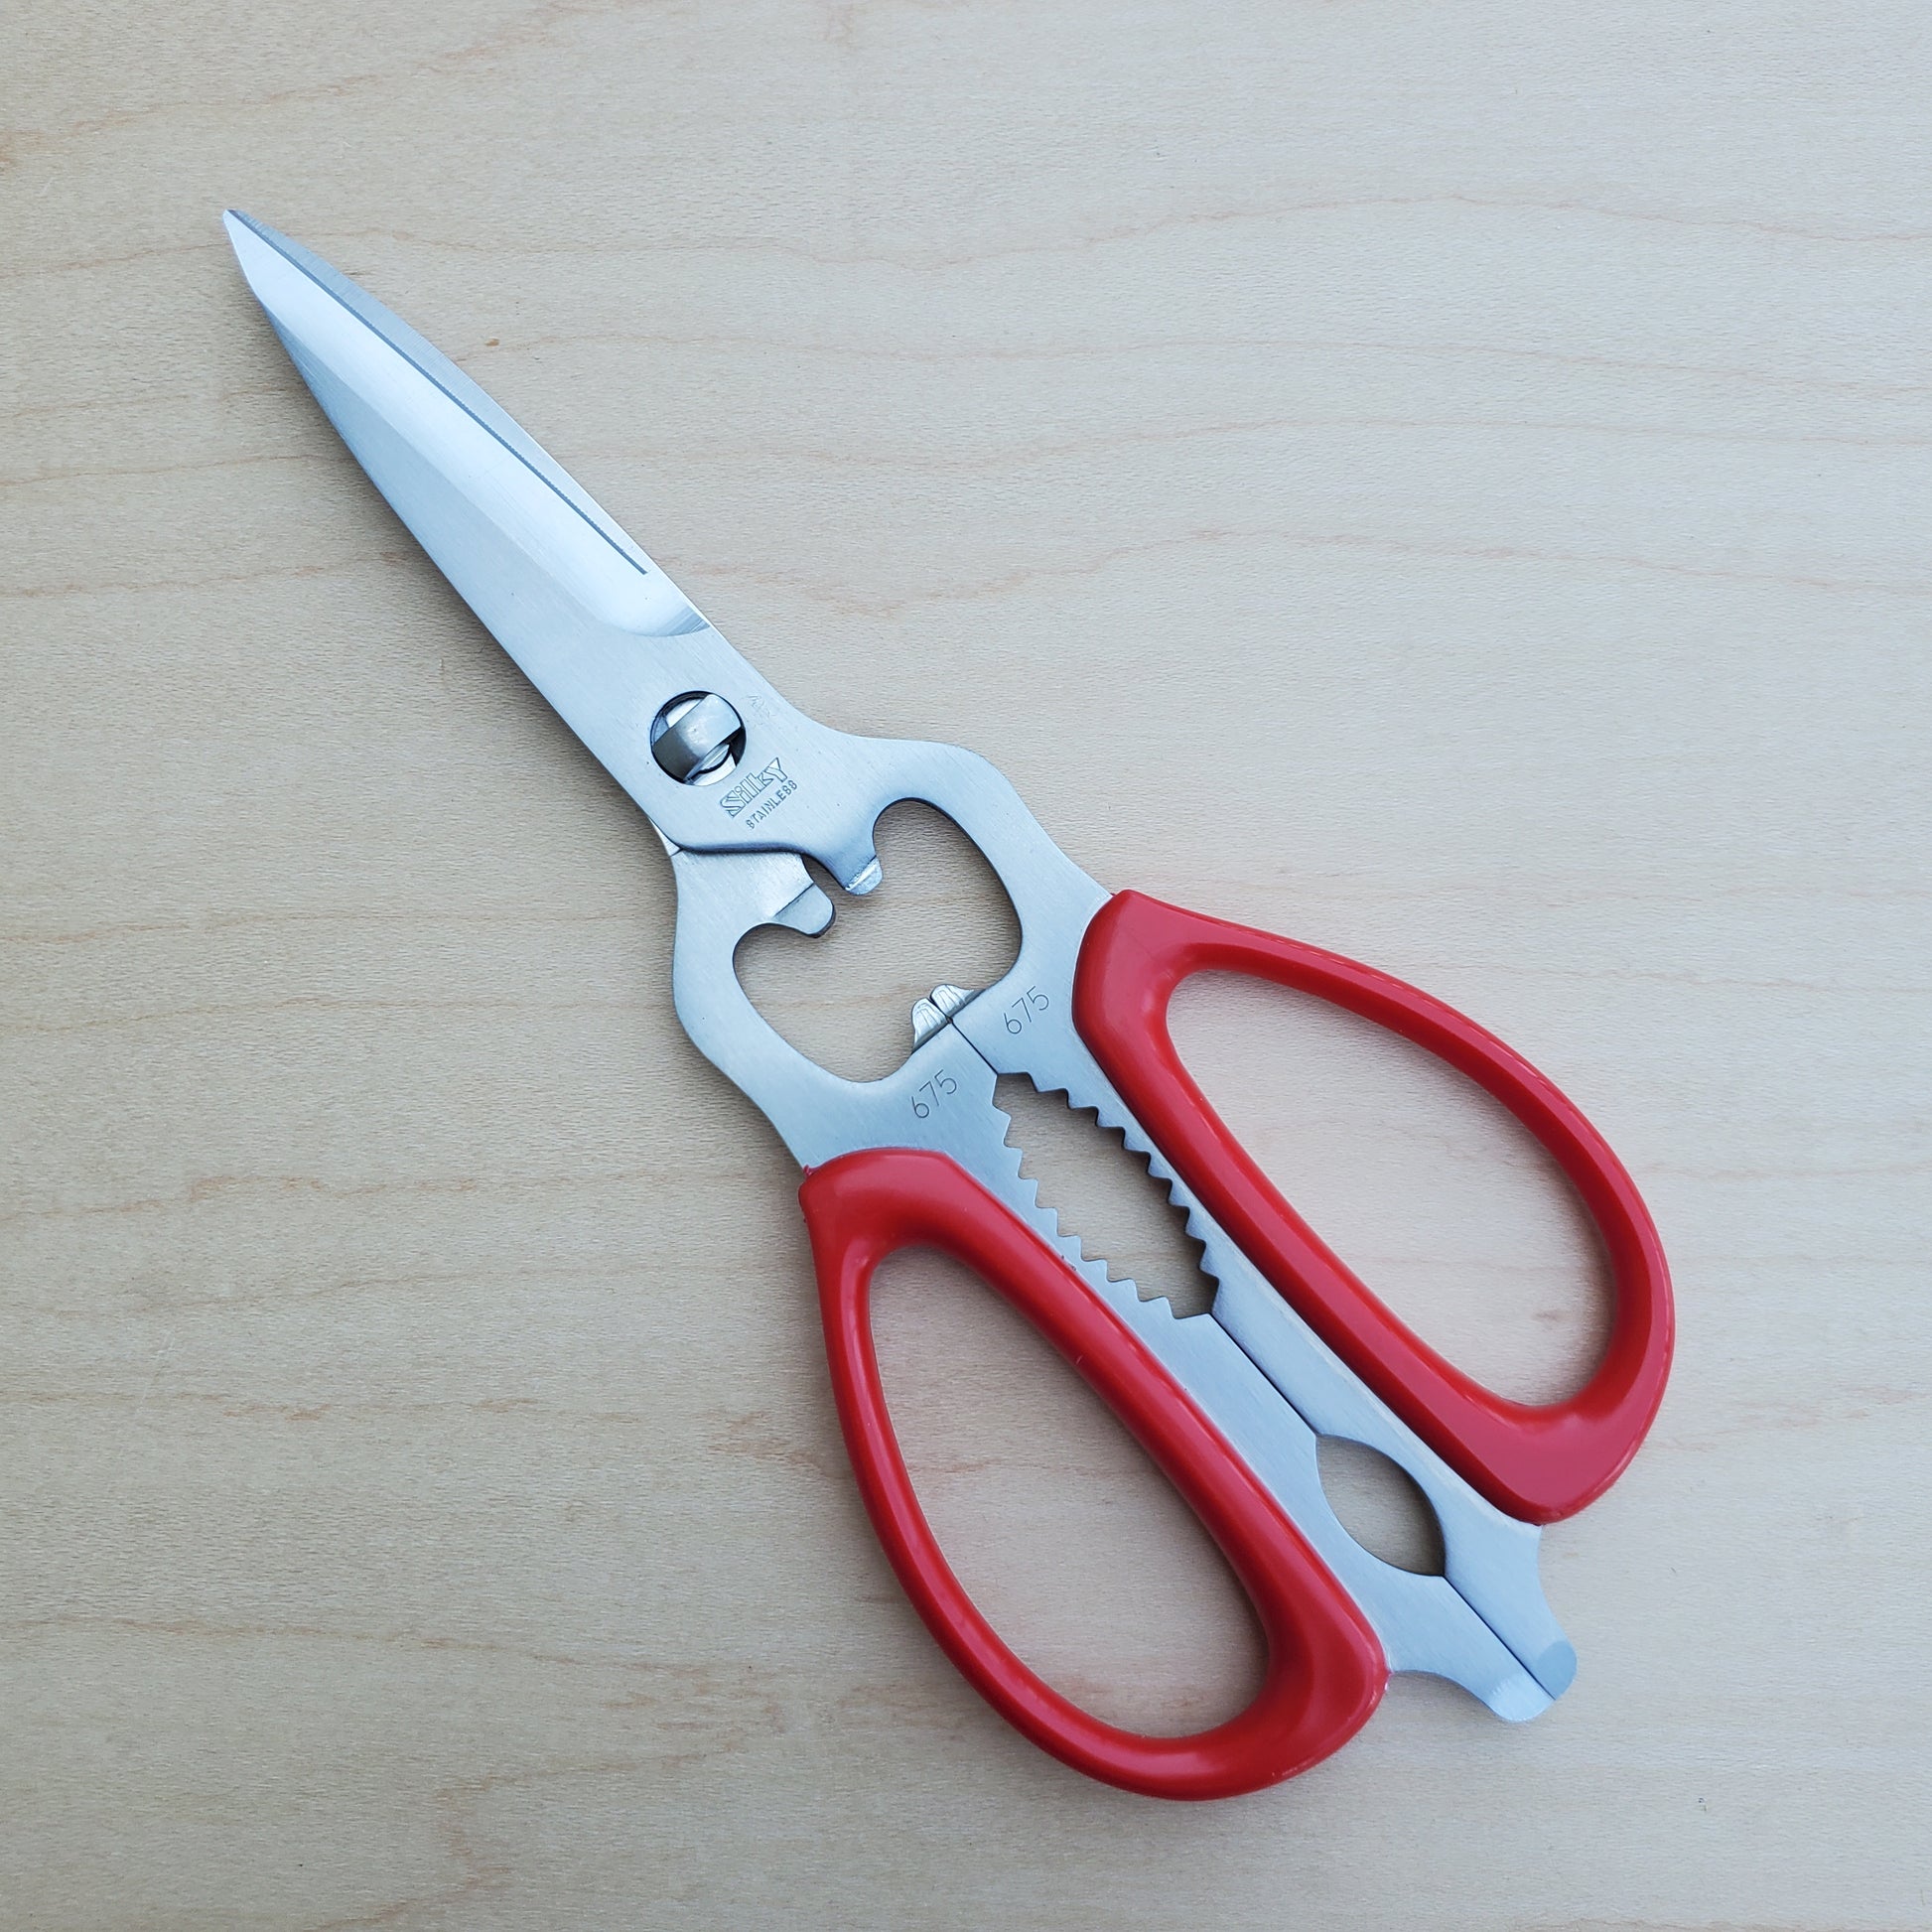 Professional Kitchen Scissors Heavy Duty Stainless Steel Shears